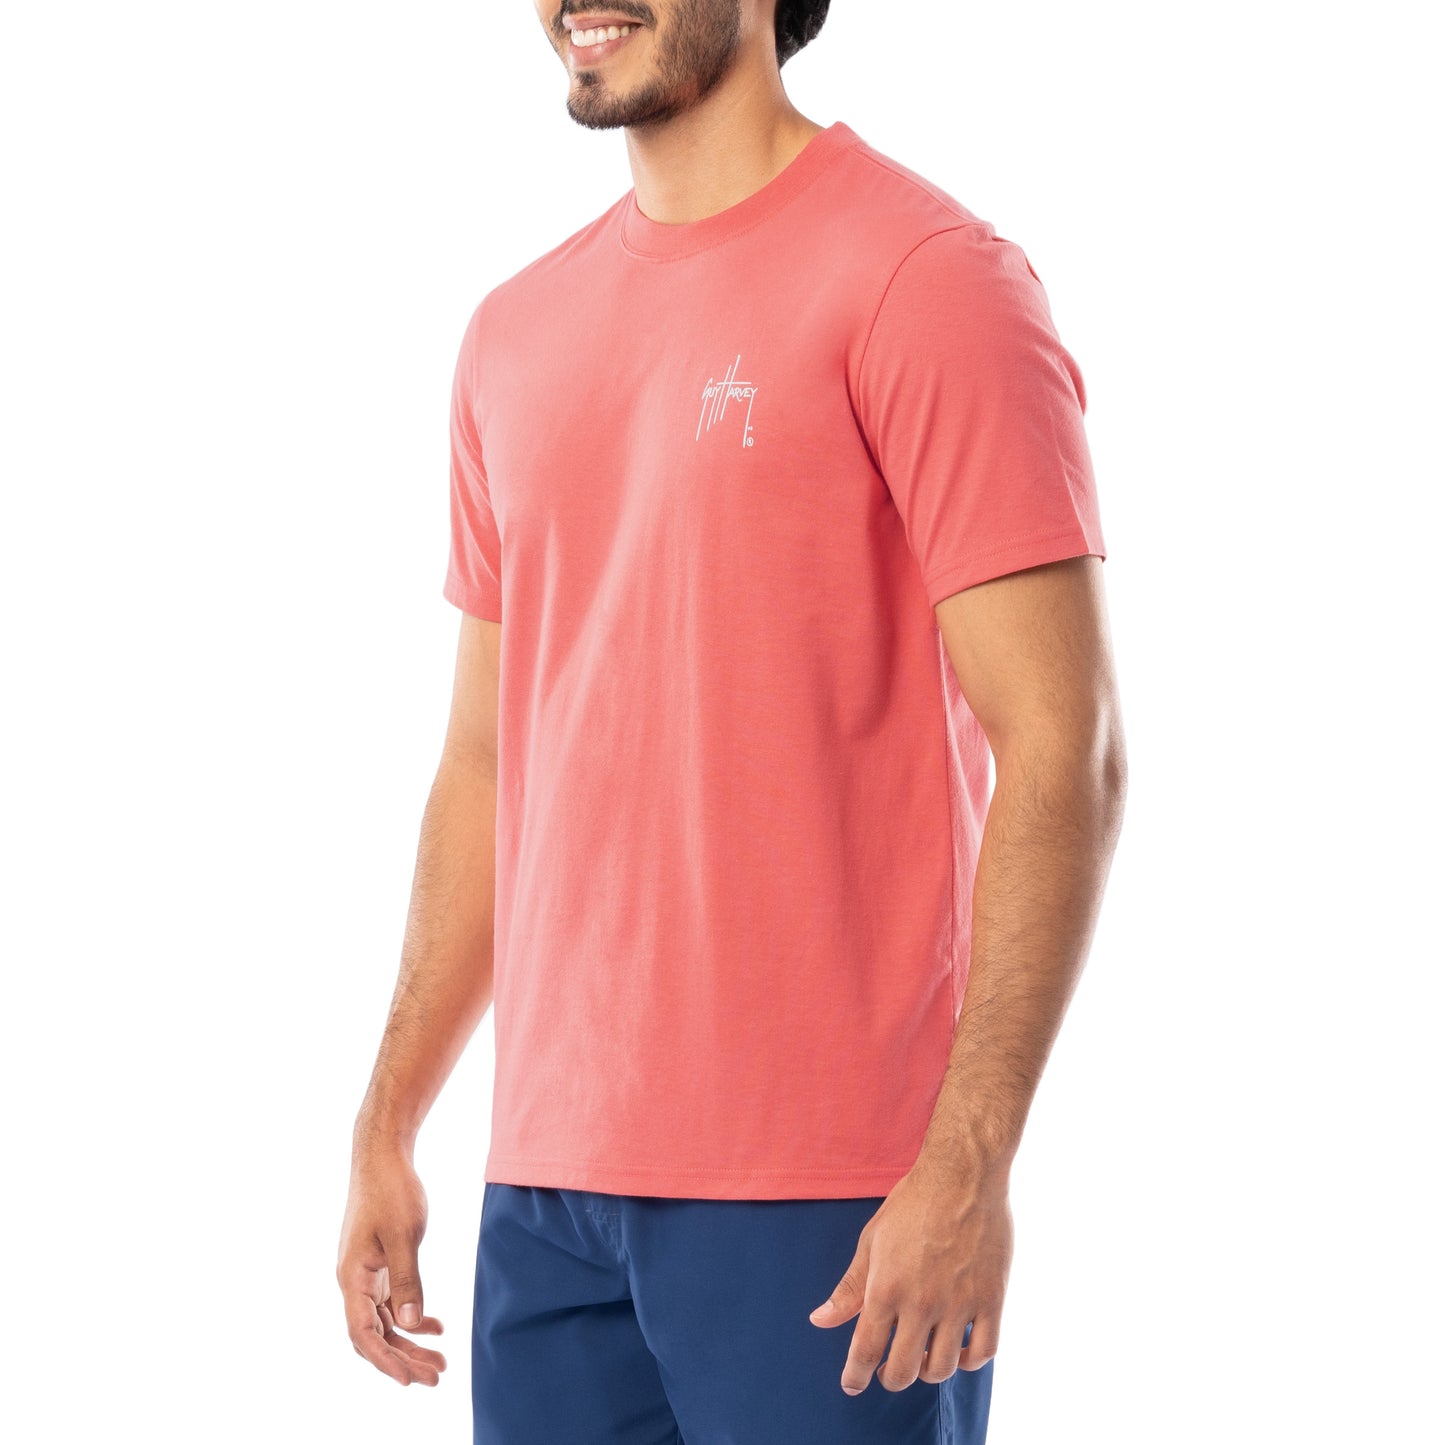 Men's Catch & Release Short Sleeve T-Shirt